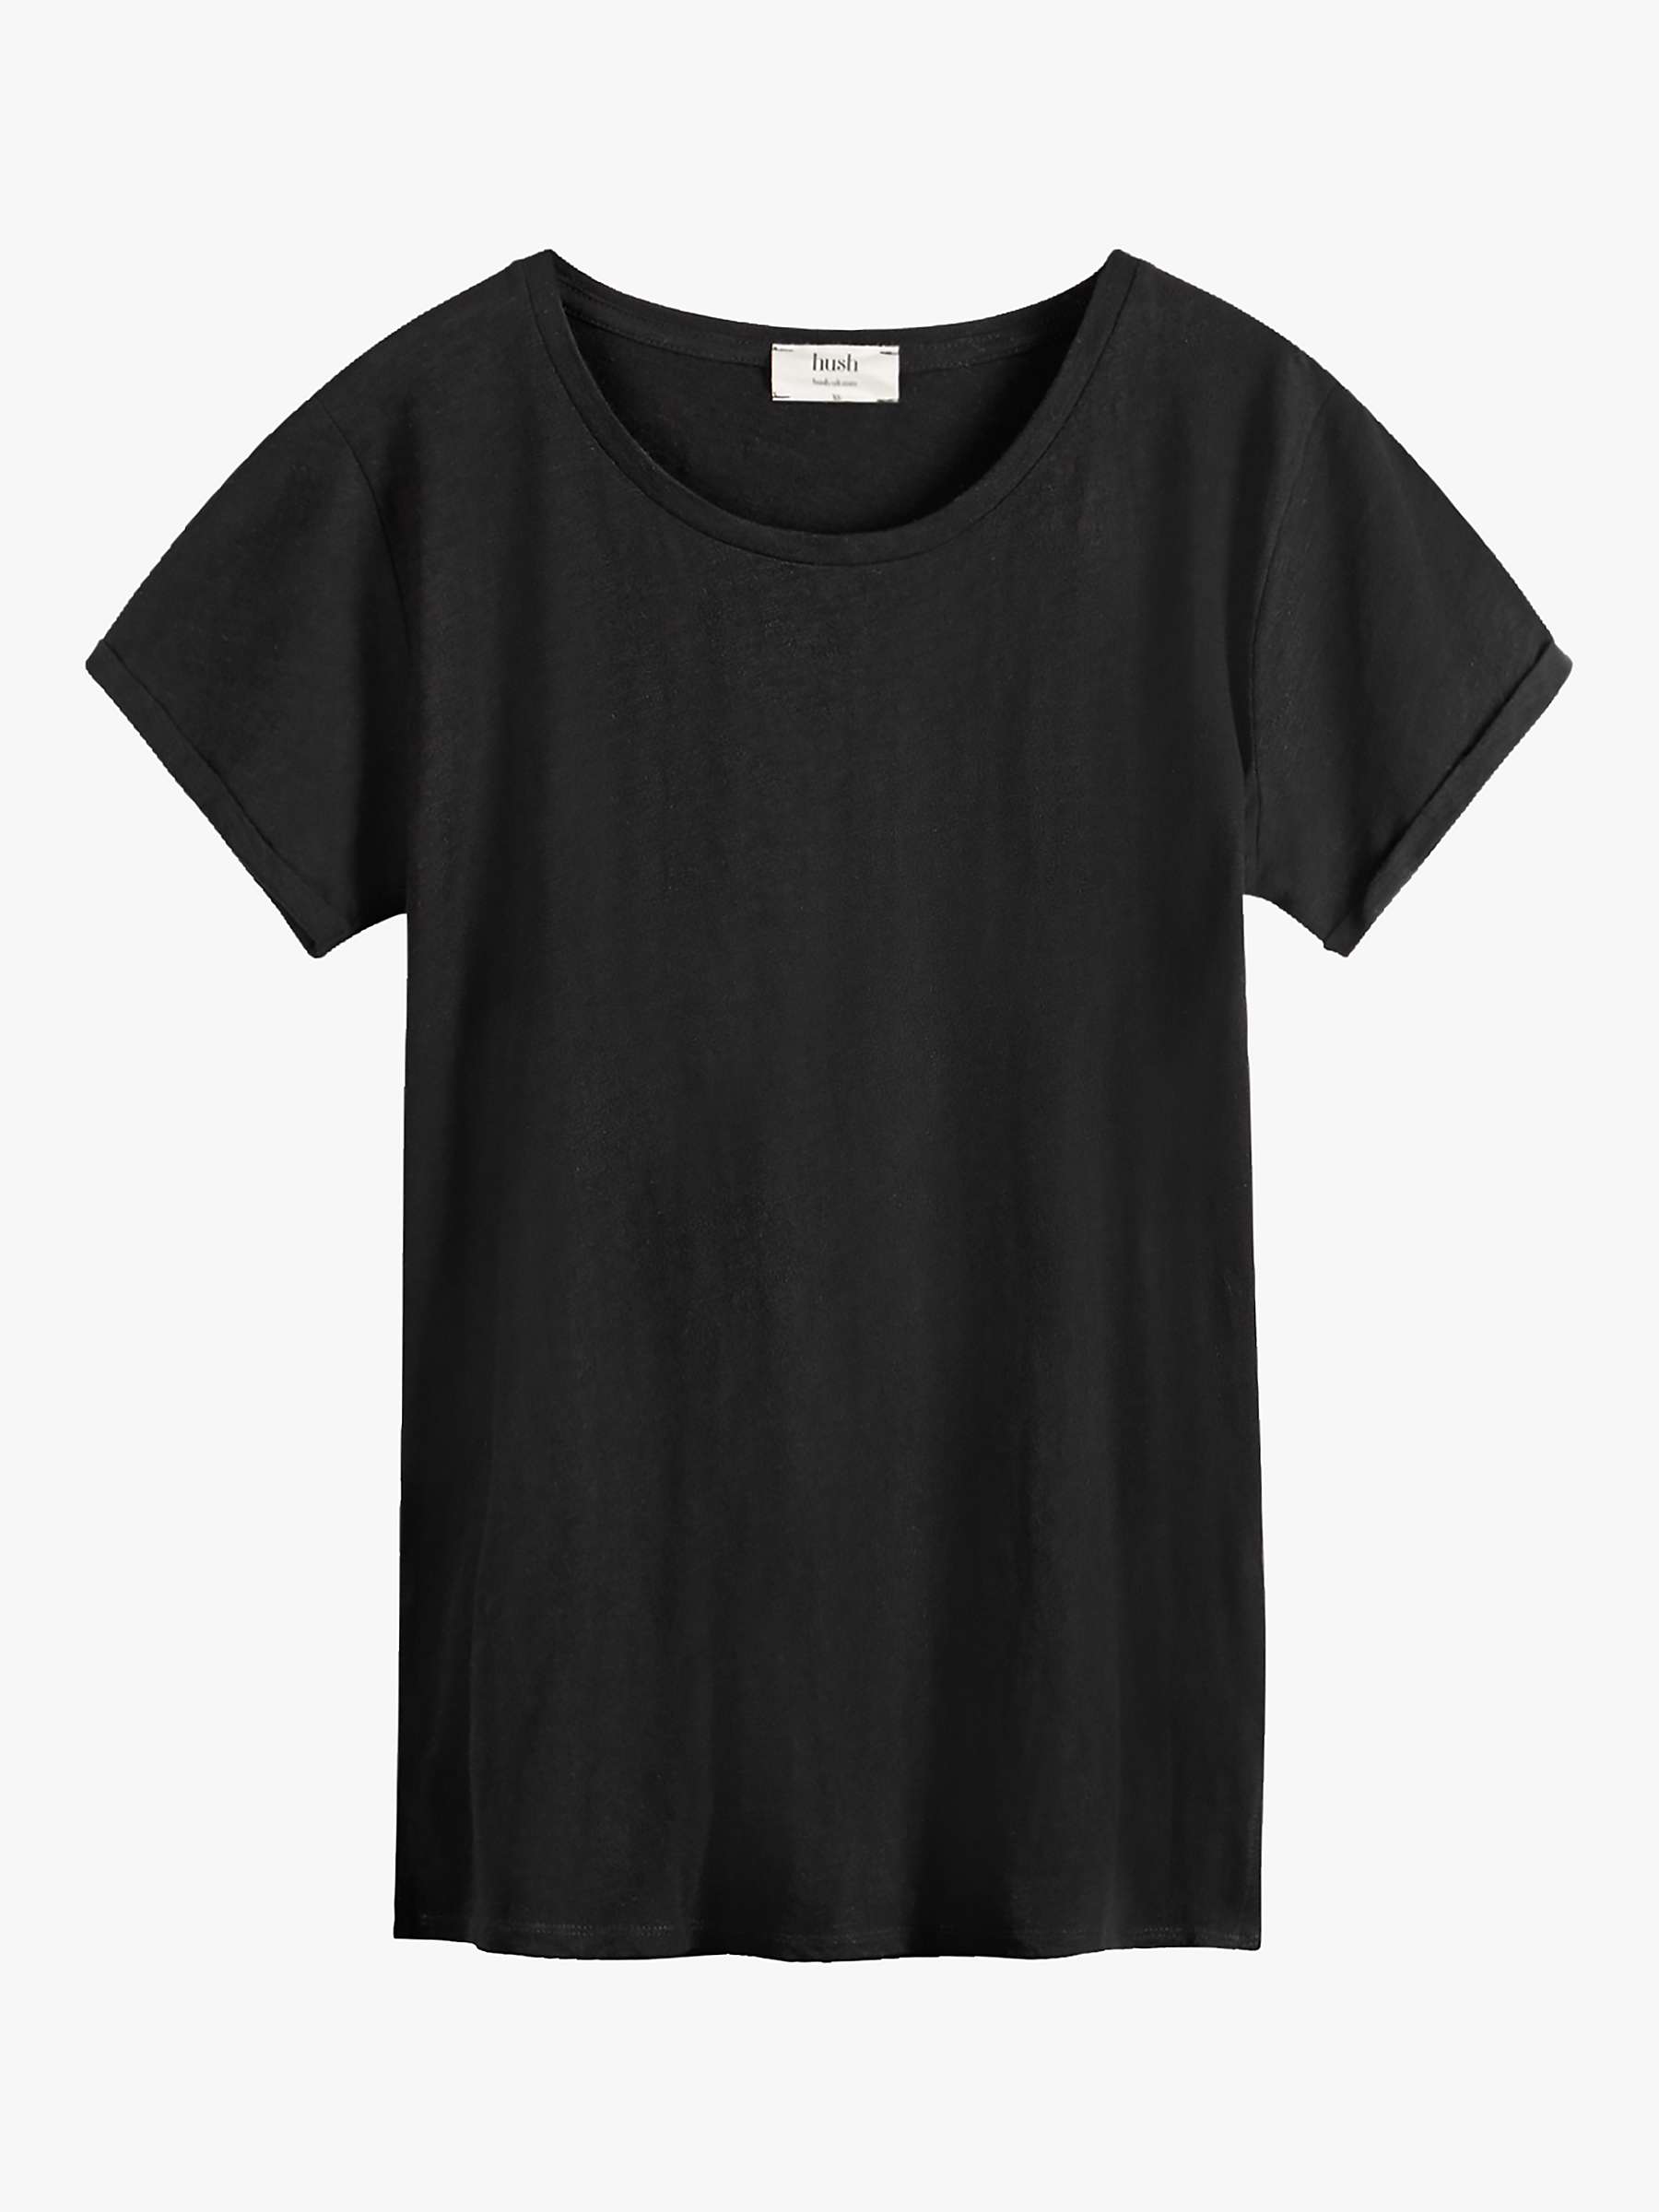 hush Cali Cotton Crew Neck T-Shirt, Black at John Lewis & Partners